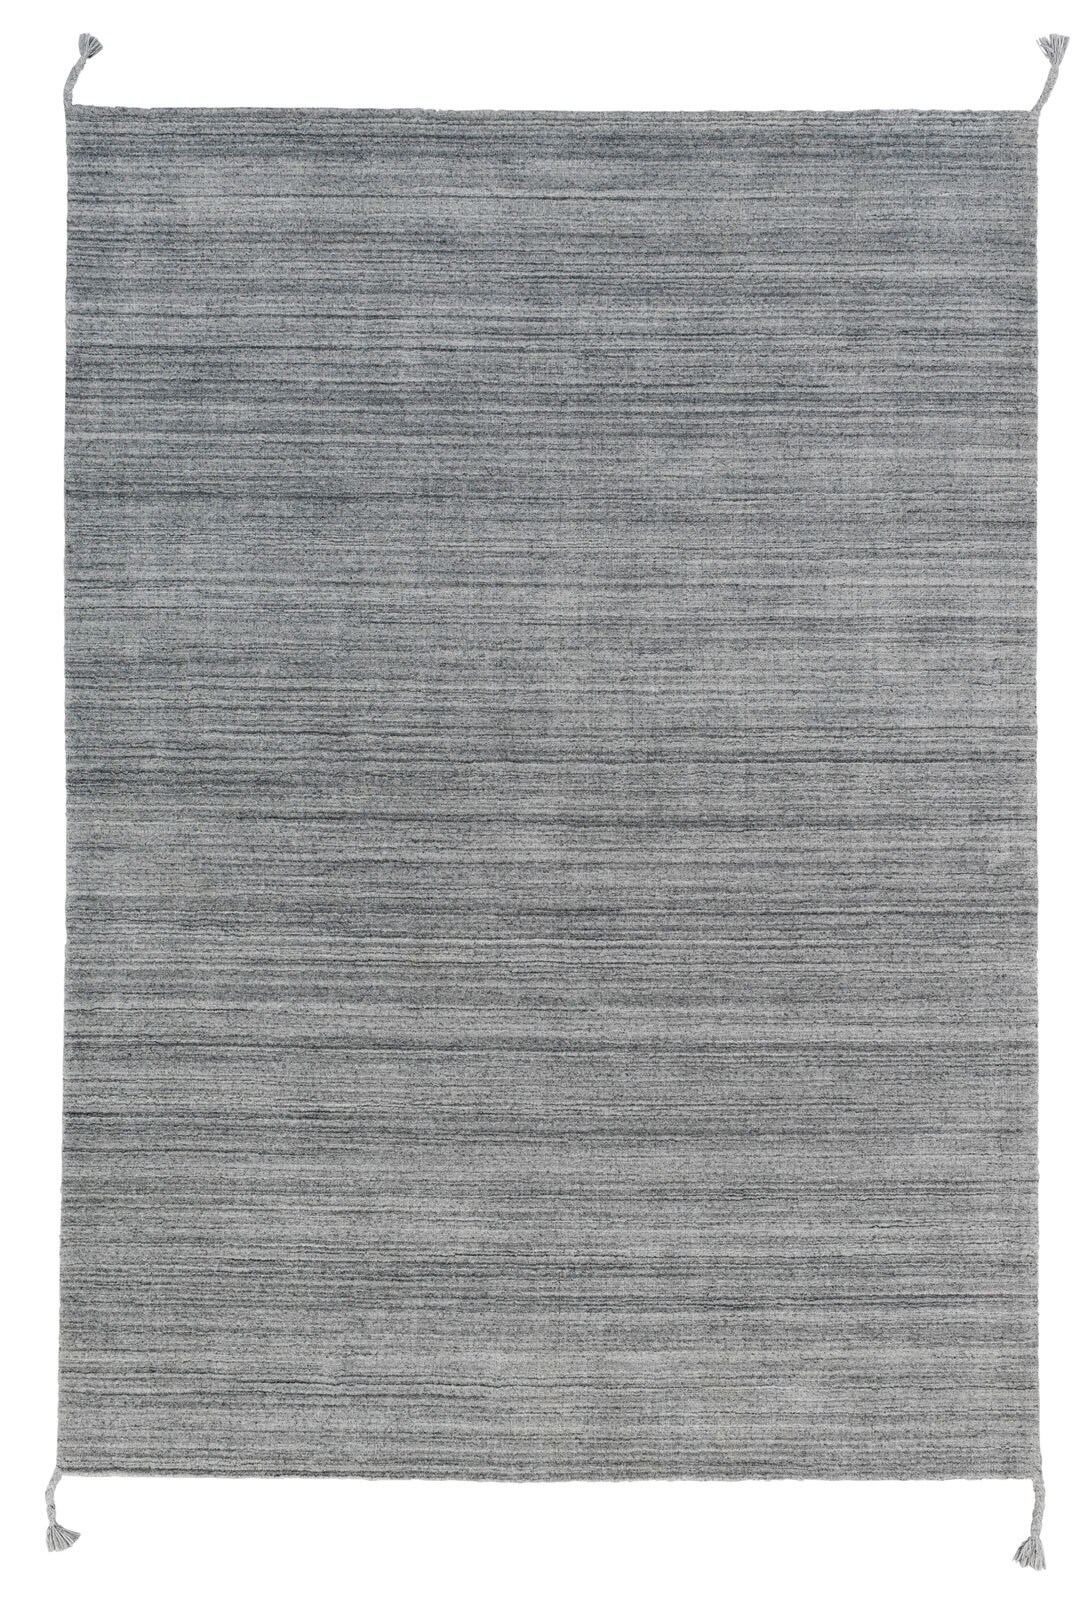 SCHÖNER WOHNEN-Kollektion Webteppich ALURA 170 x 240 cm grau